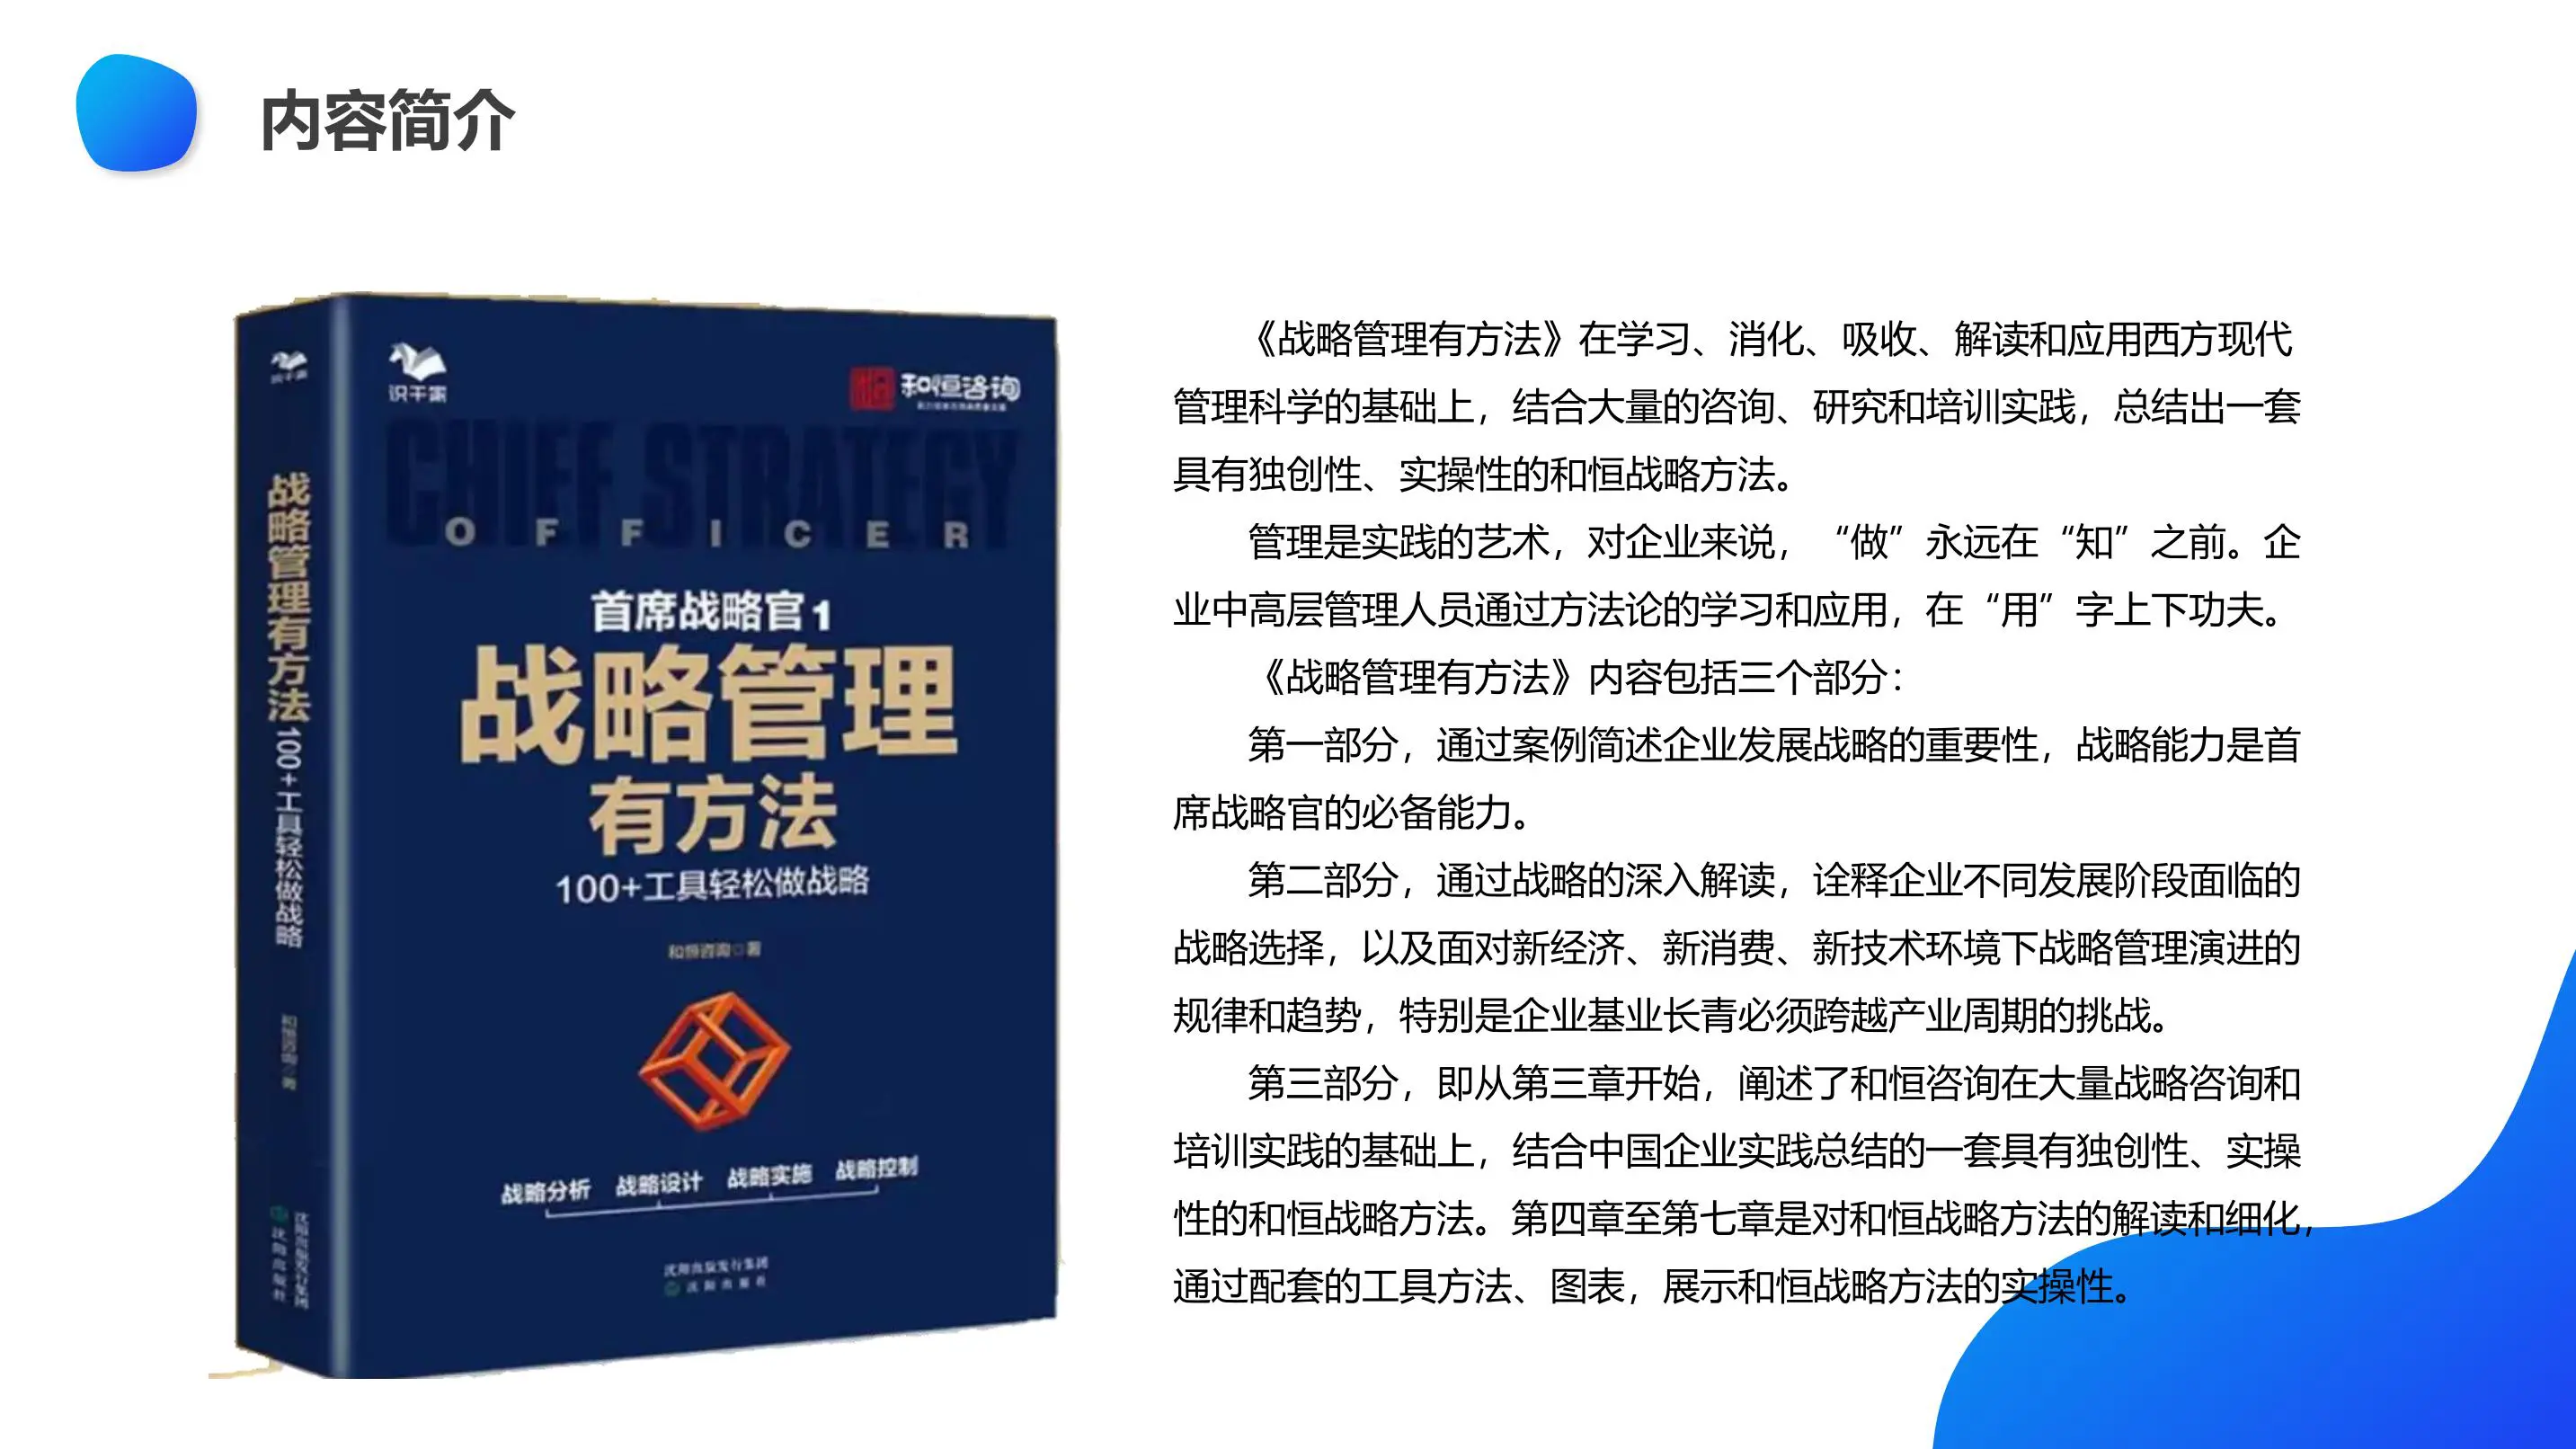 《战略管理有方法：100+工具轻松做战略》助力中国企业高质量发展 – 读书笔记 by 一勺思想插图3